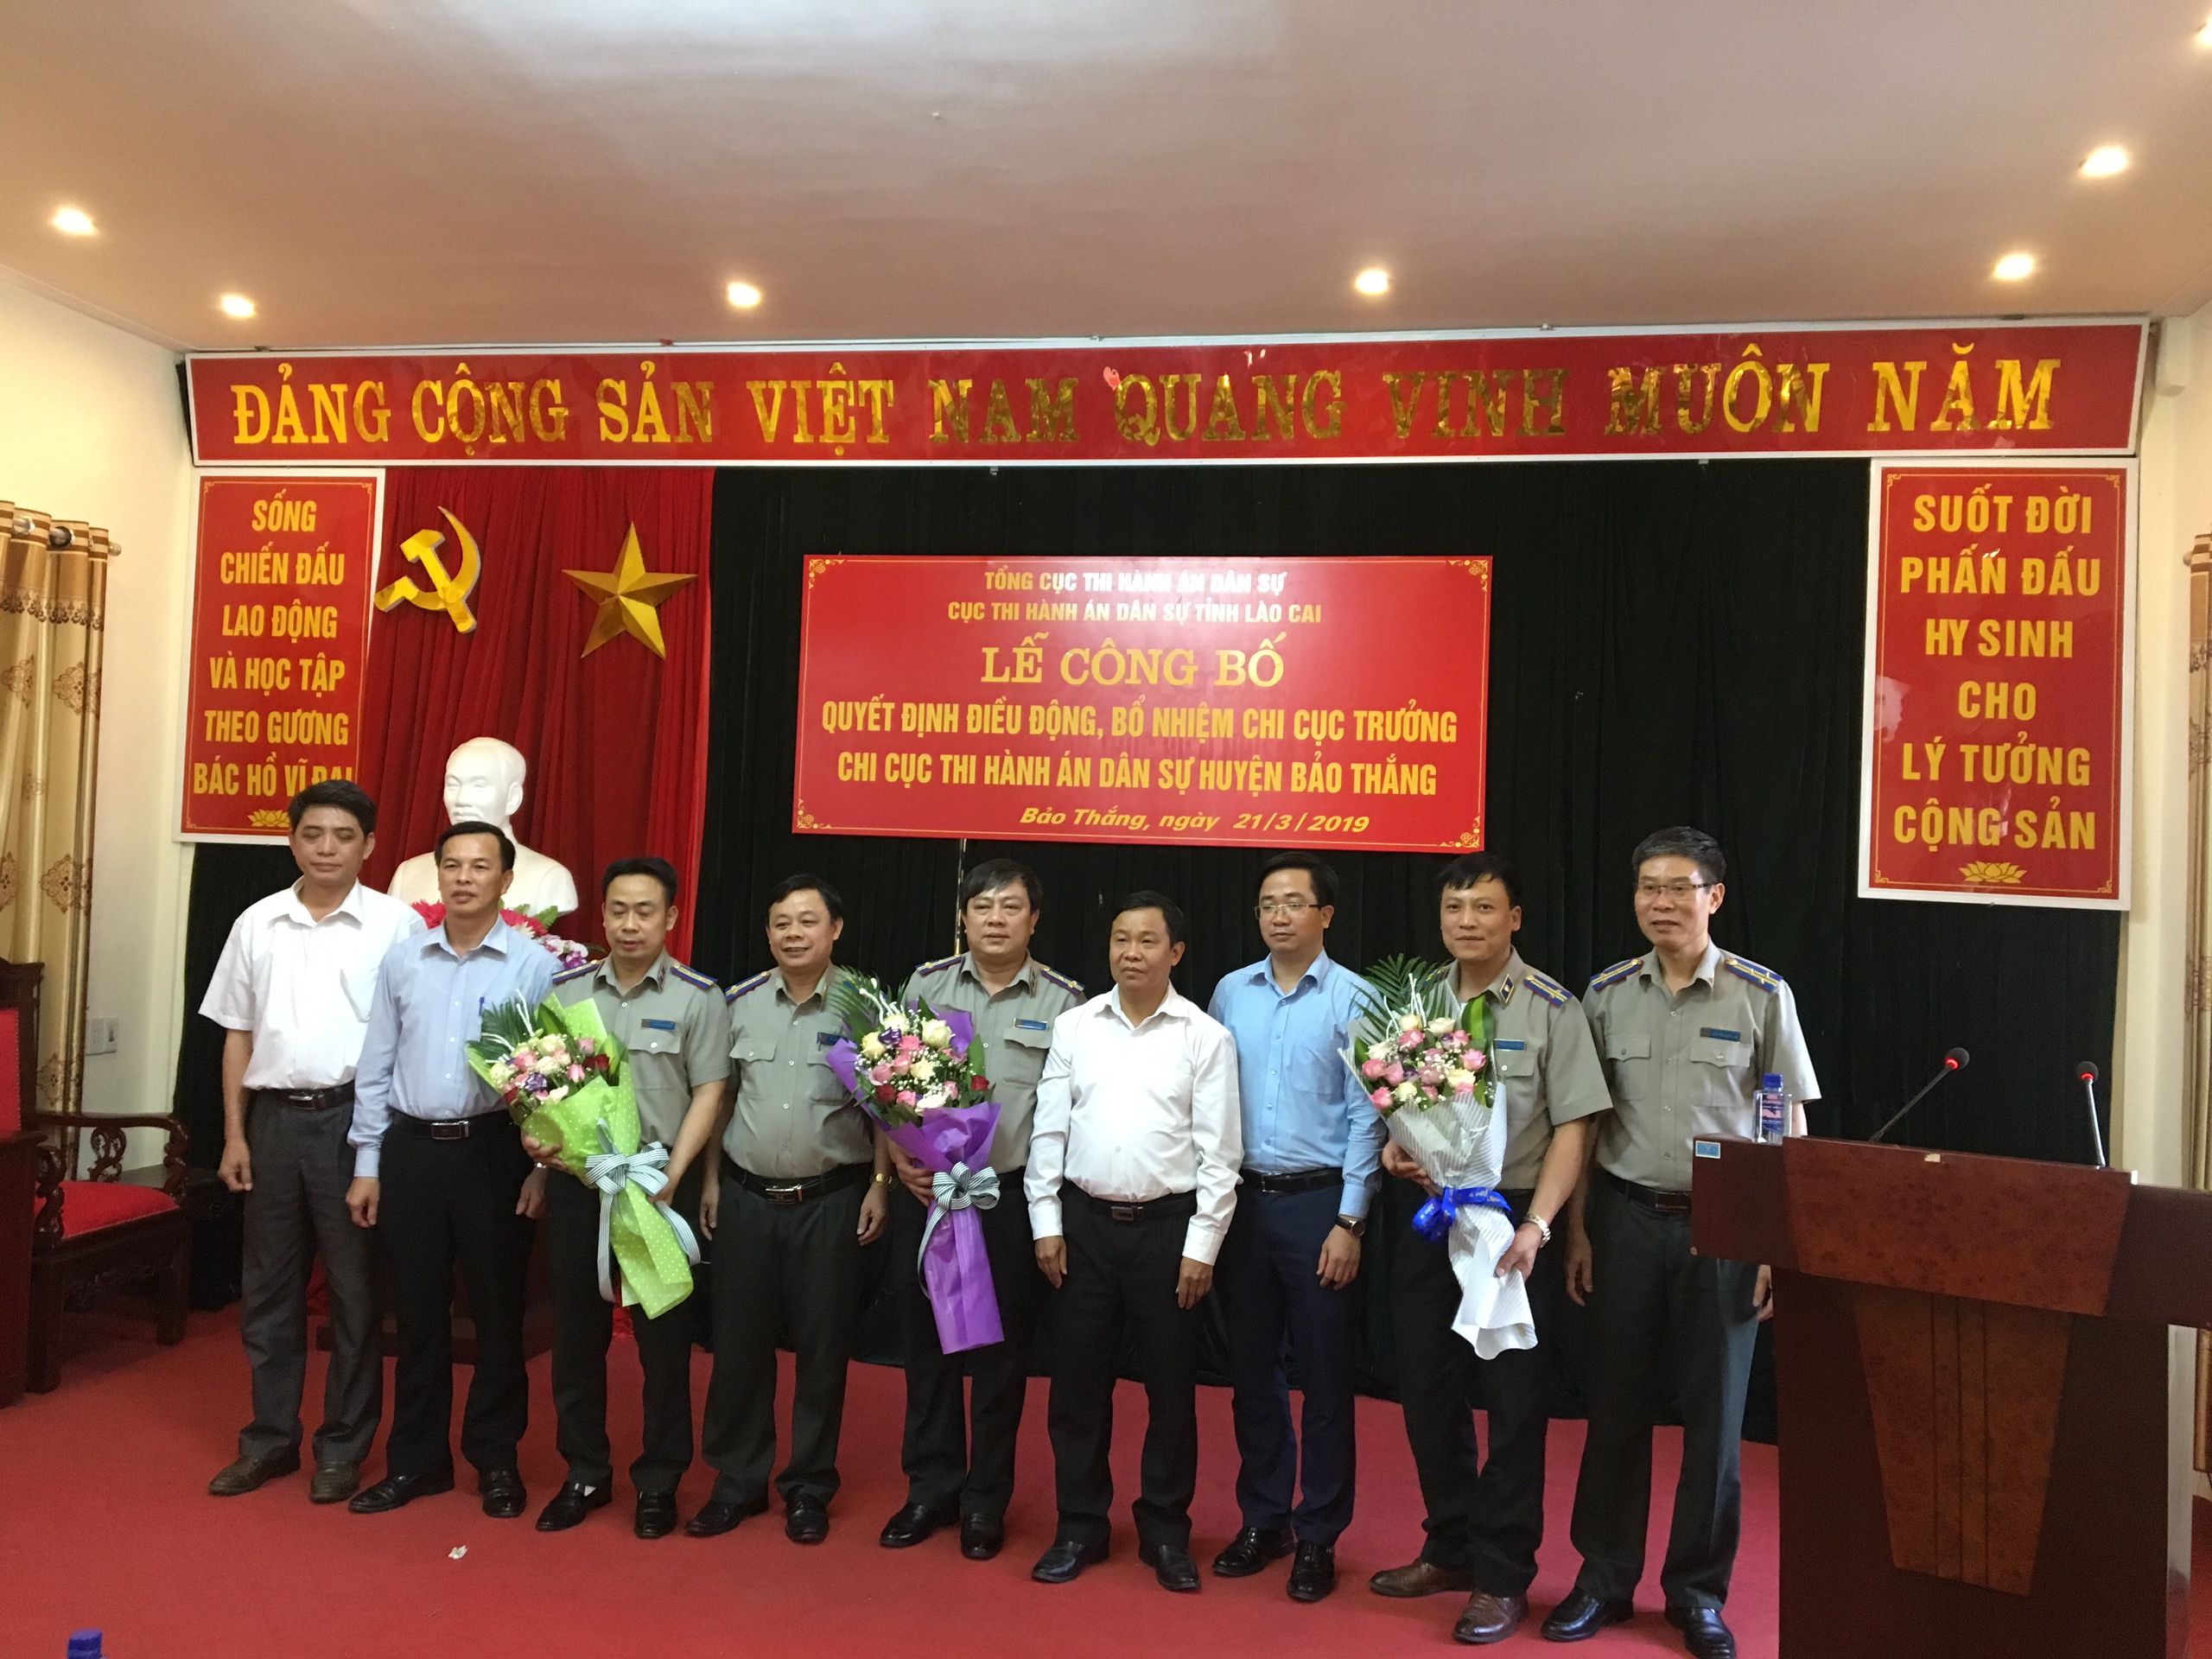 Công bố và trao quyết định điều động, bổ nhiệm công chức lãnh đạo Chi cục Thi hành án dân sự ở tỉnh Lào Cai